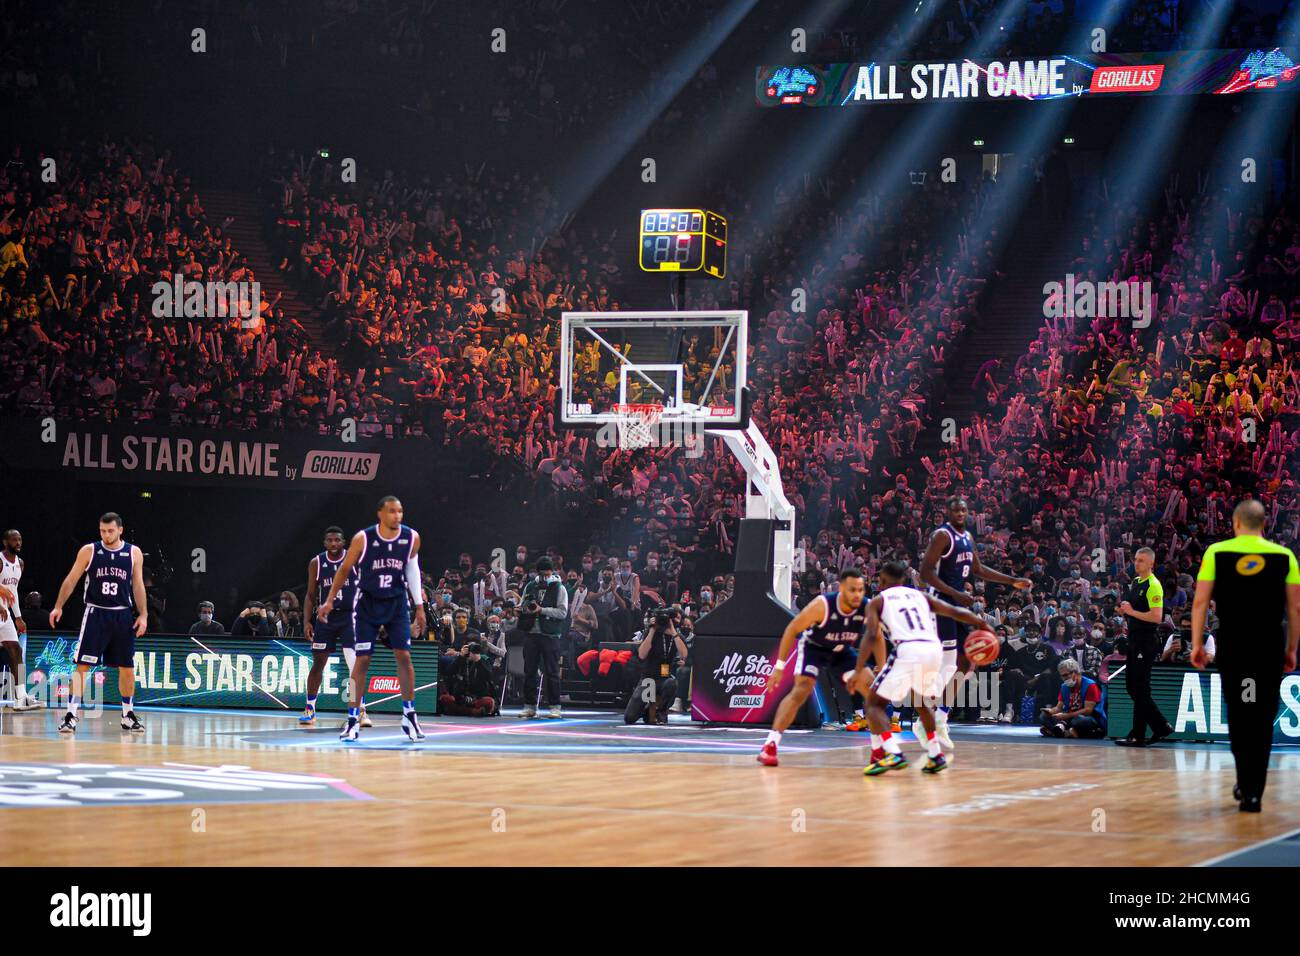 All Star Game of Championship Elite à l'Accor Arena de Paris-Bercy.Plus de  16 000 spectateurs ont assisté au salon français de basket-ball à Paris, en  France, le 29 décembre 2021.(Photo de Lionel